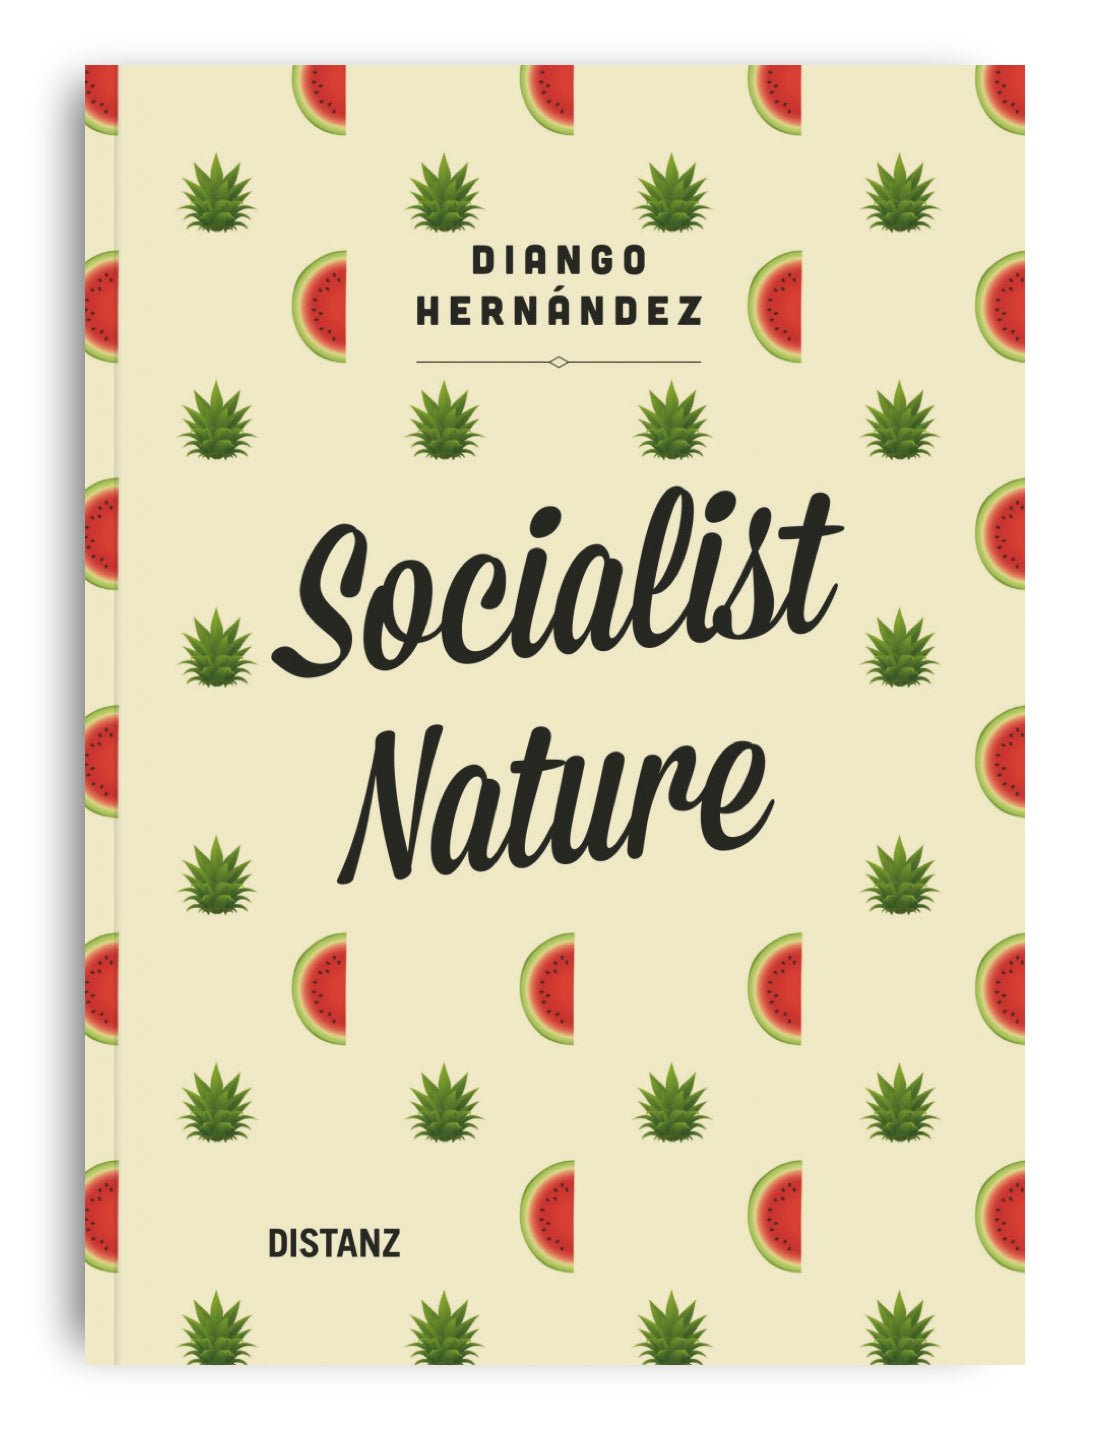 Diango Hernández. Socialist Nature - Diango Hernandez Studio